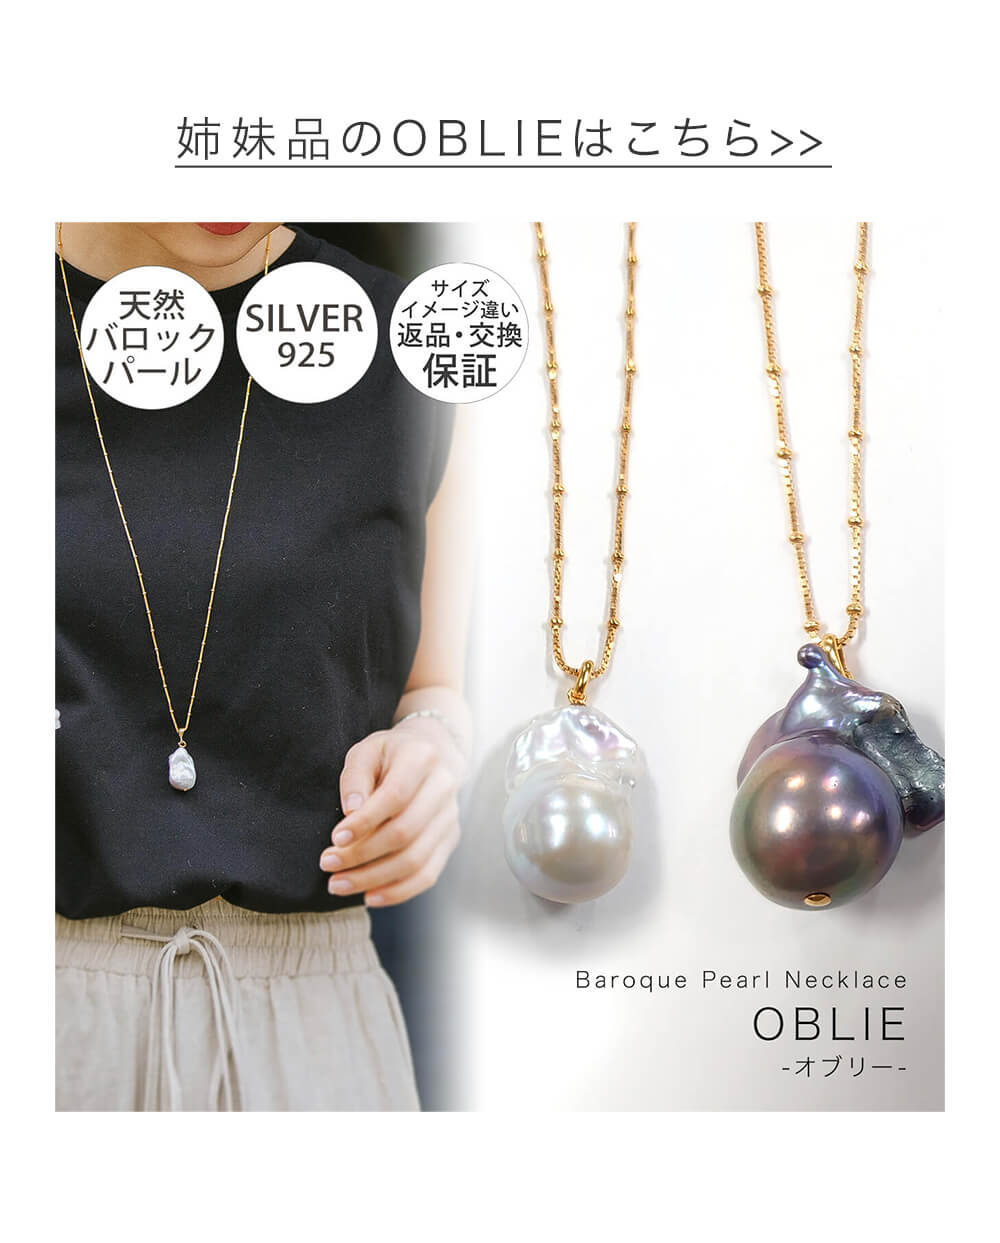 Baroque Pearl Necklace OBLIE GRANDE -オブリーグランデ- | Ops